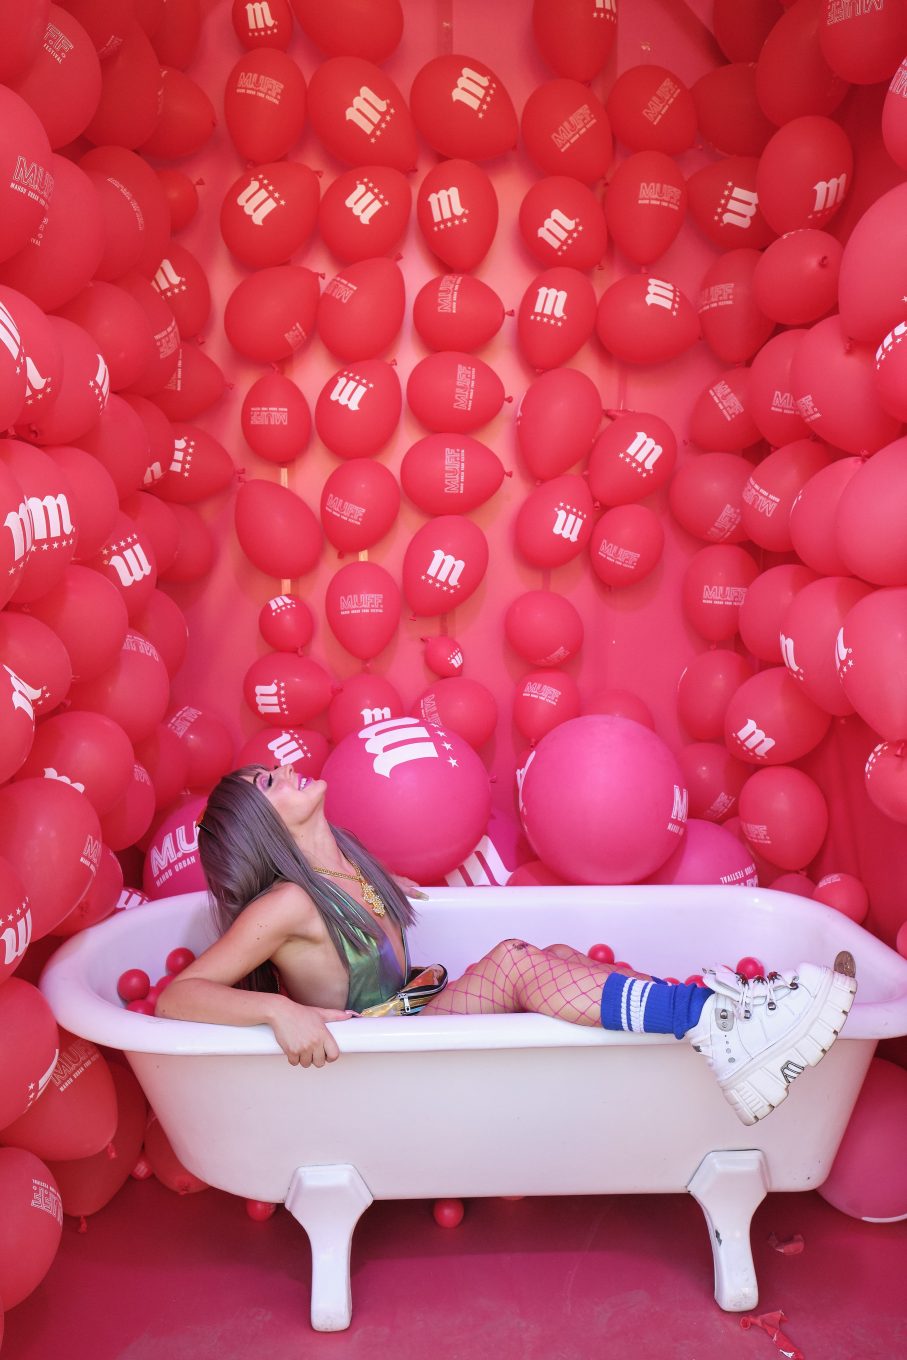 Modelo dentro de bañera con globos en las paredes